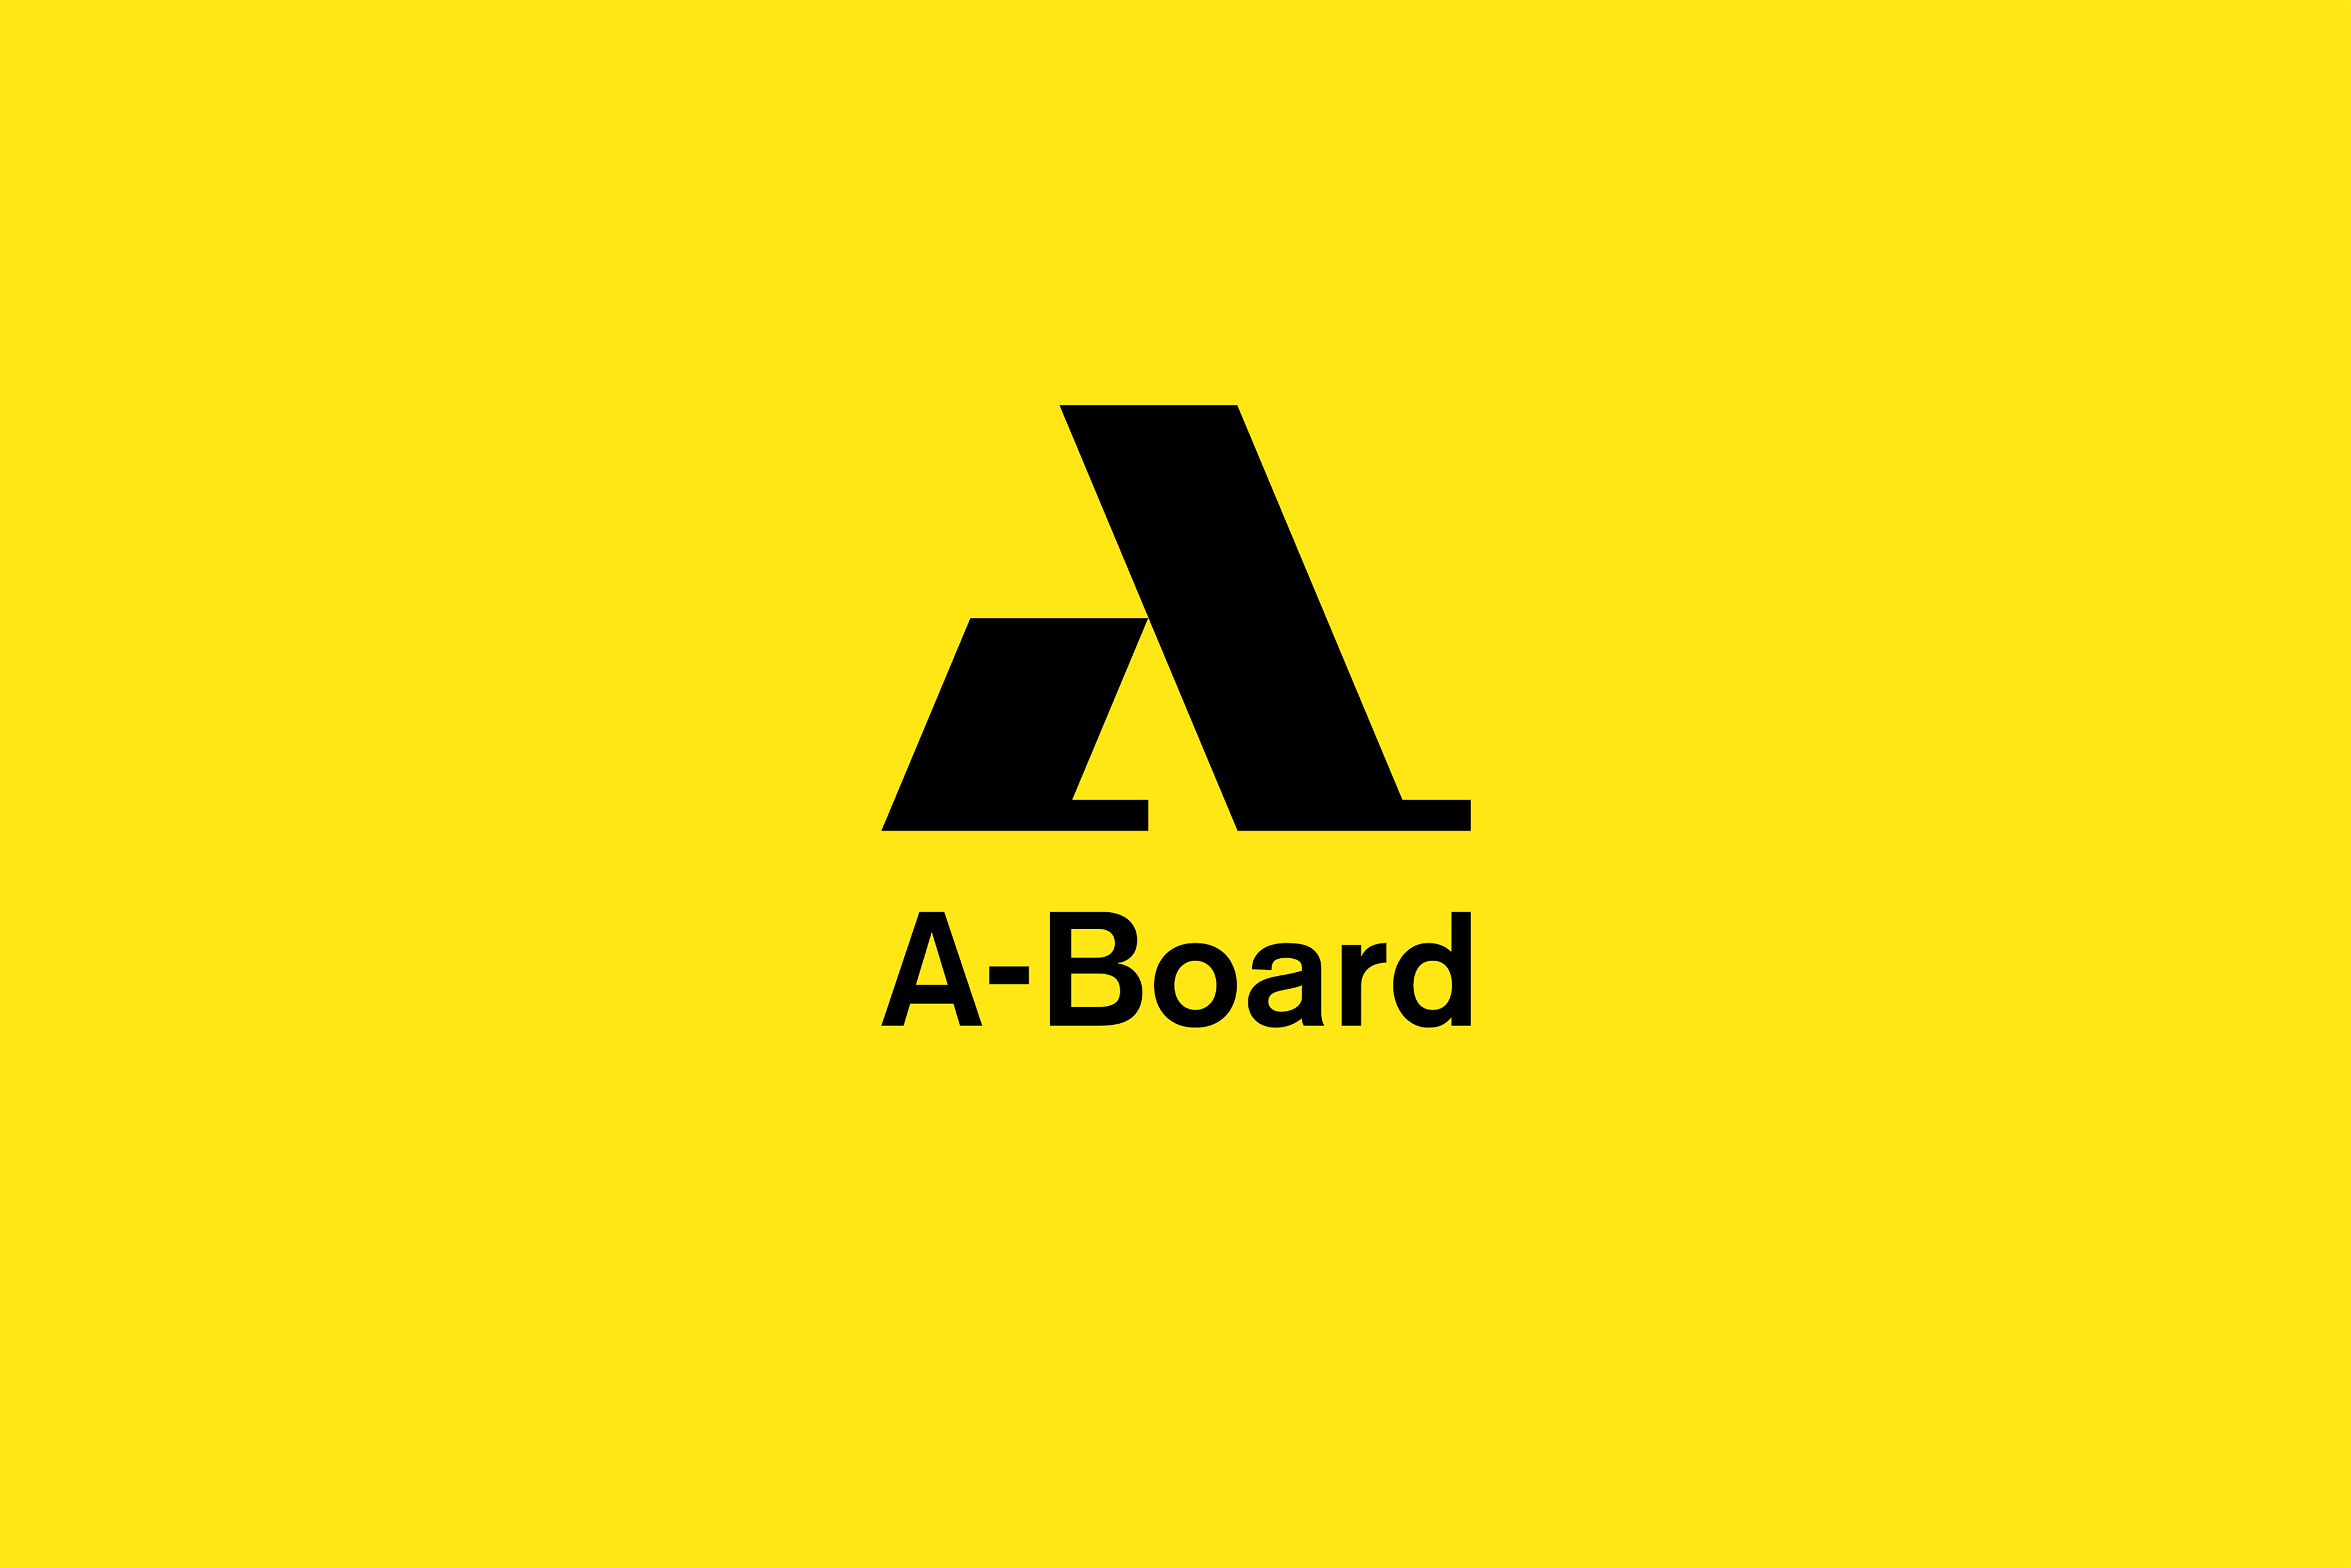 A-Board er ráðgjafastjórn hjá Akademias sem hjálpar sprotafyrirtækjum að stíga sín fyrstu skref, 2021.